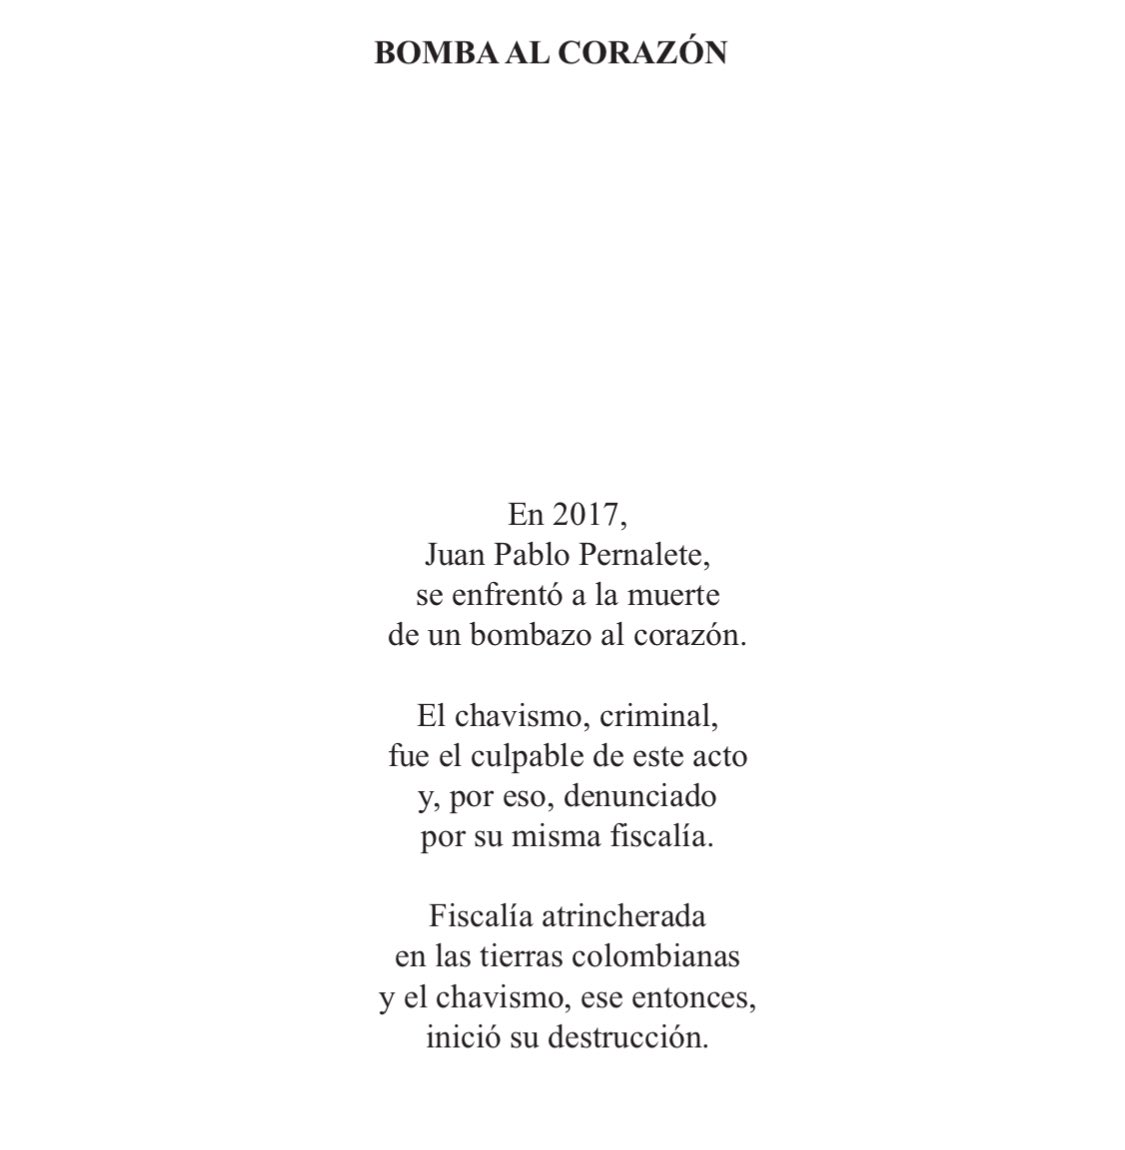 BOMBA AL CORAZÓN, dedicada a JUAN PABLO PERNALETE,quien perdió la vida en manos del Holocausto Chavista, hace 7 años @elloverah

Poemario Venezuela Desnuda,2019.
#23DeAbril #ProhibidoOlvidar #7AñosSinJuanPablo #TCMS3 #Kubo #Tchouameni #ArdaGüler #RealSociedadRealMadrid #Villarejo